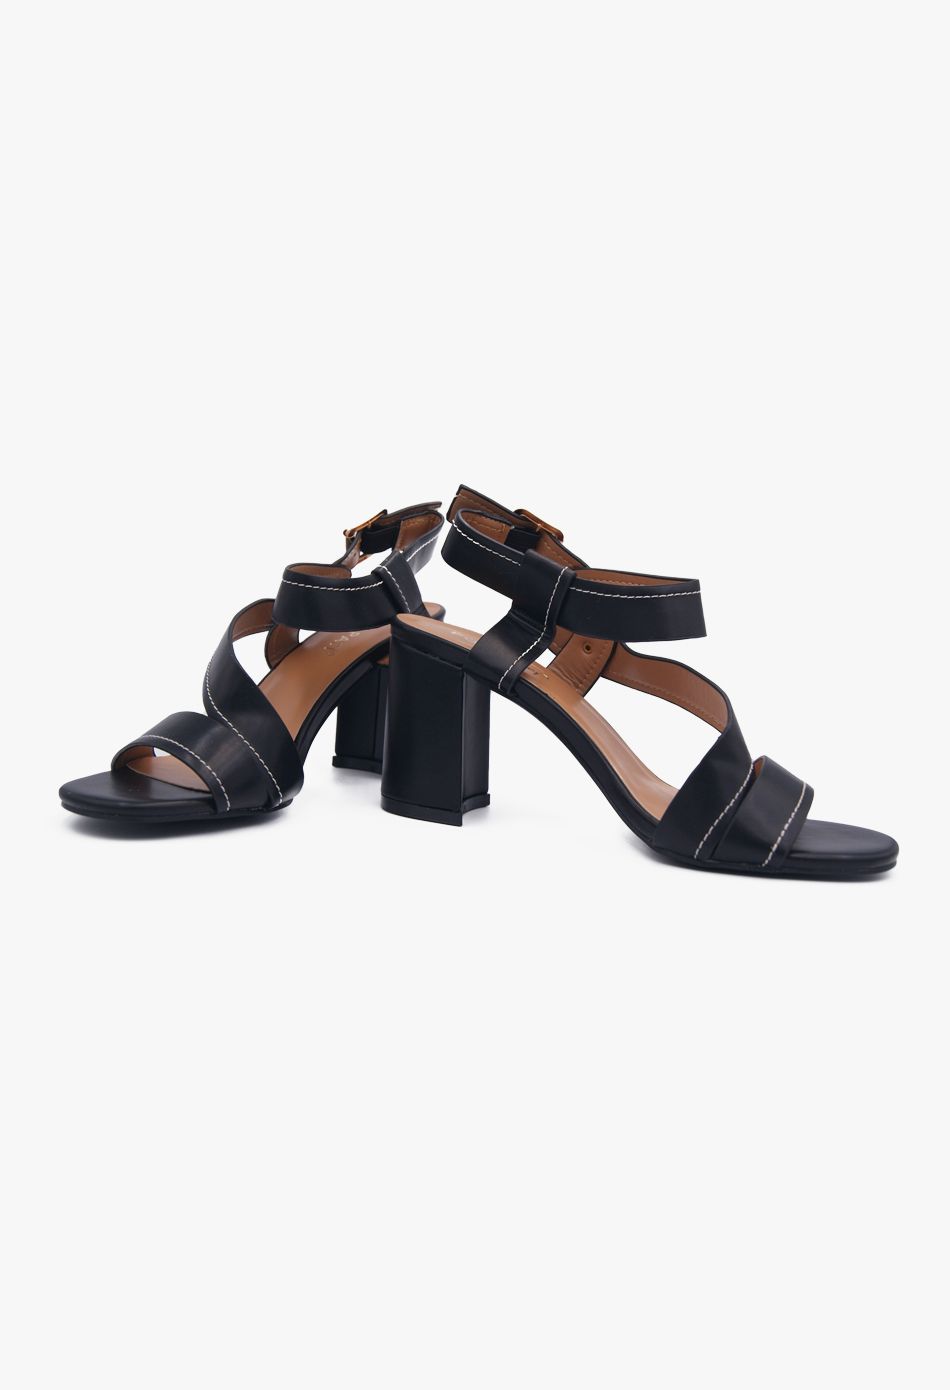 Γυναικεία Πέδιλα με Χοντρό Τακούνι Μαύρο / HC079-black Ανοιχτά Παπούτσια joya.gr